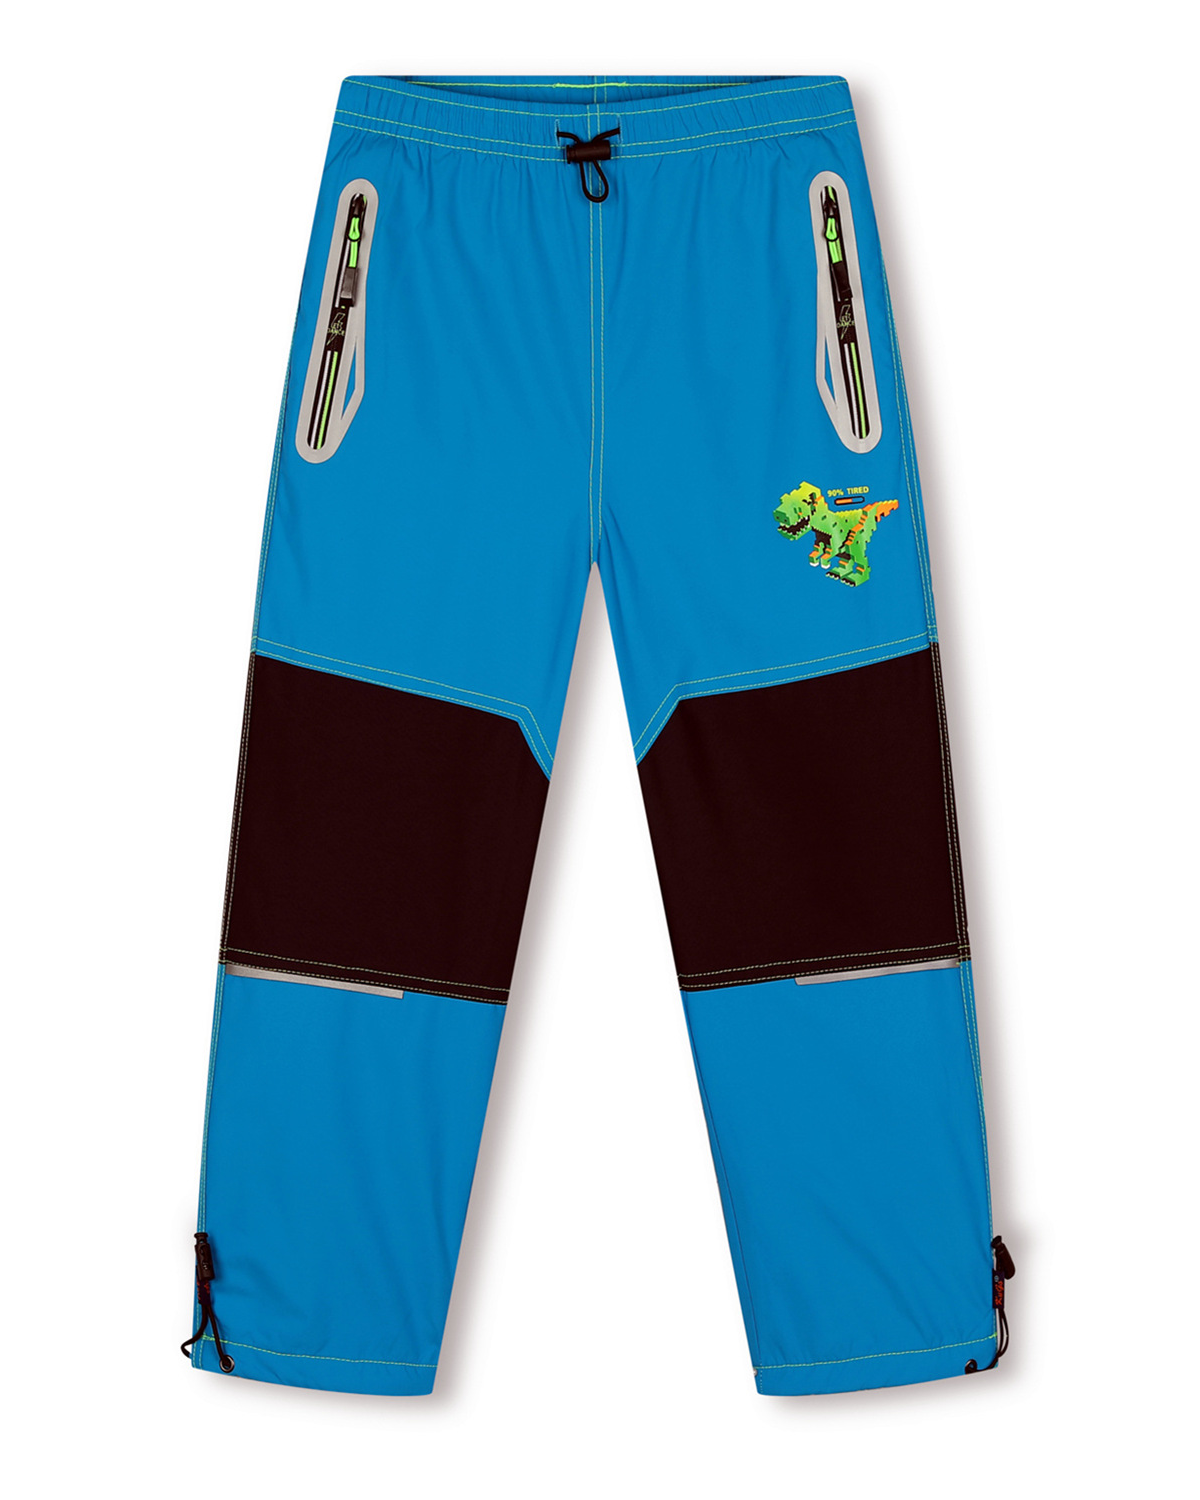 Chlapecké šusťákové kalhoty, zateplené - KUGO DK7129, tyrkysová Barva: Tyrkysová, Velikost: 116